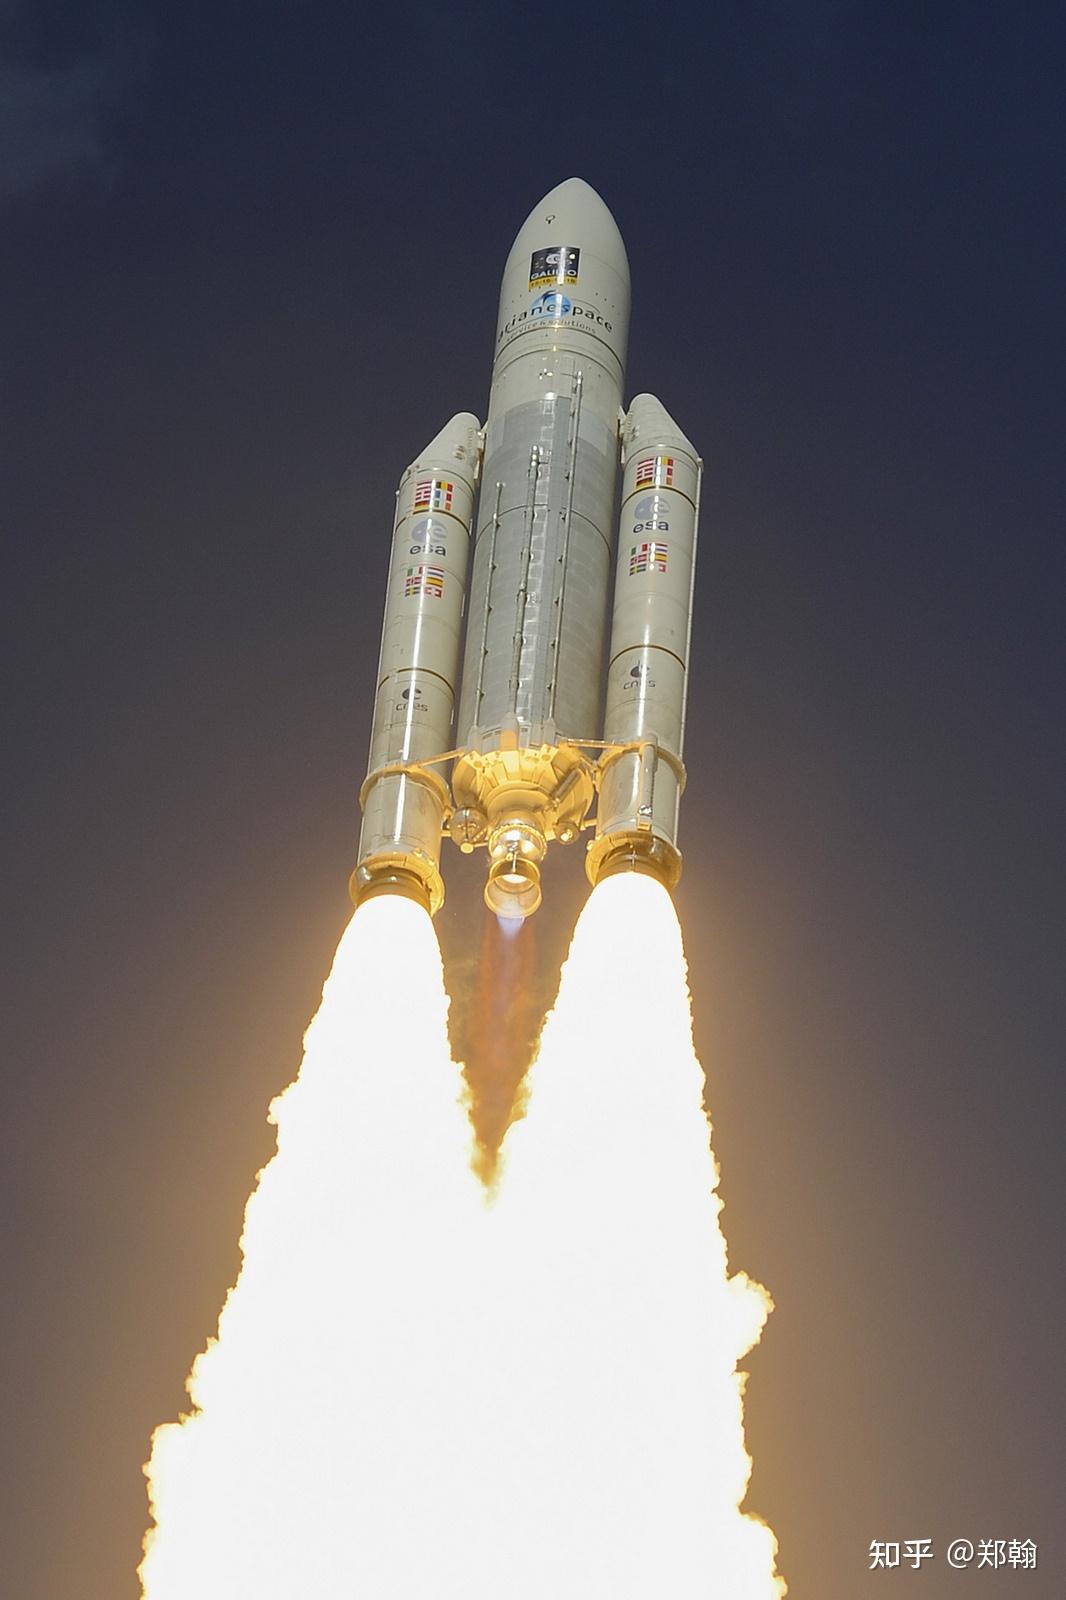 阿丽亚娜5火箭发射升空阿丽亚娜五型火箭的近地运载能力约为21吨左右